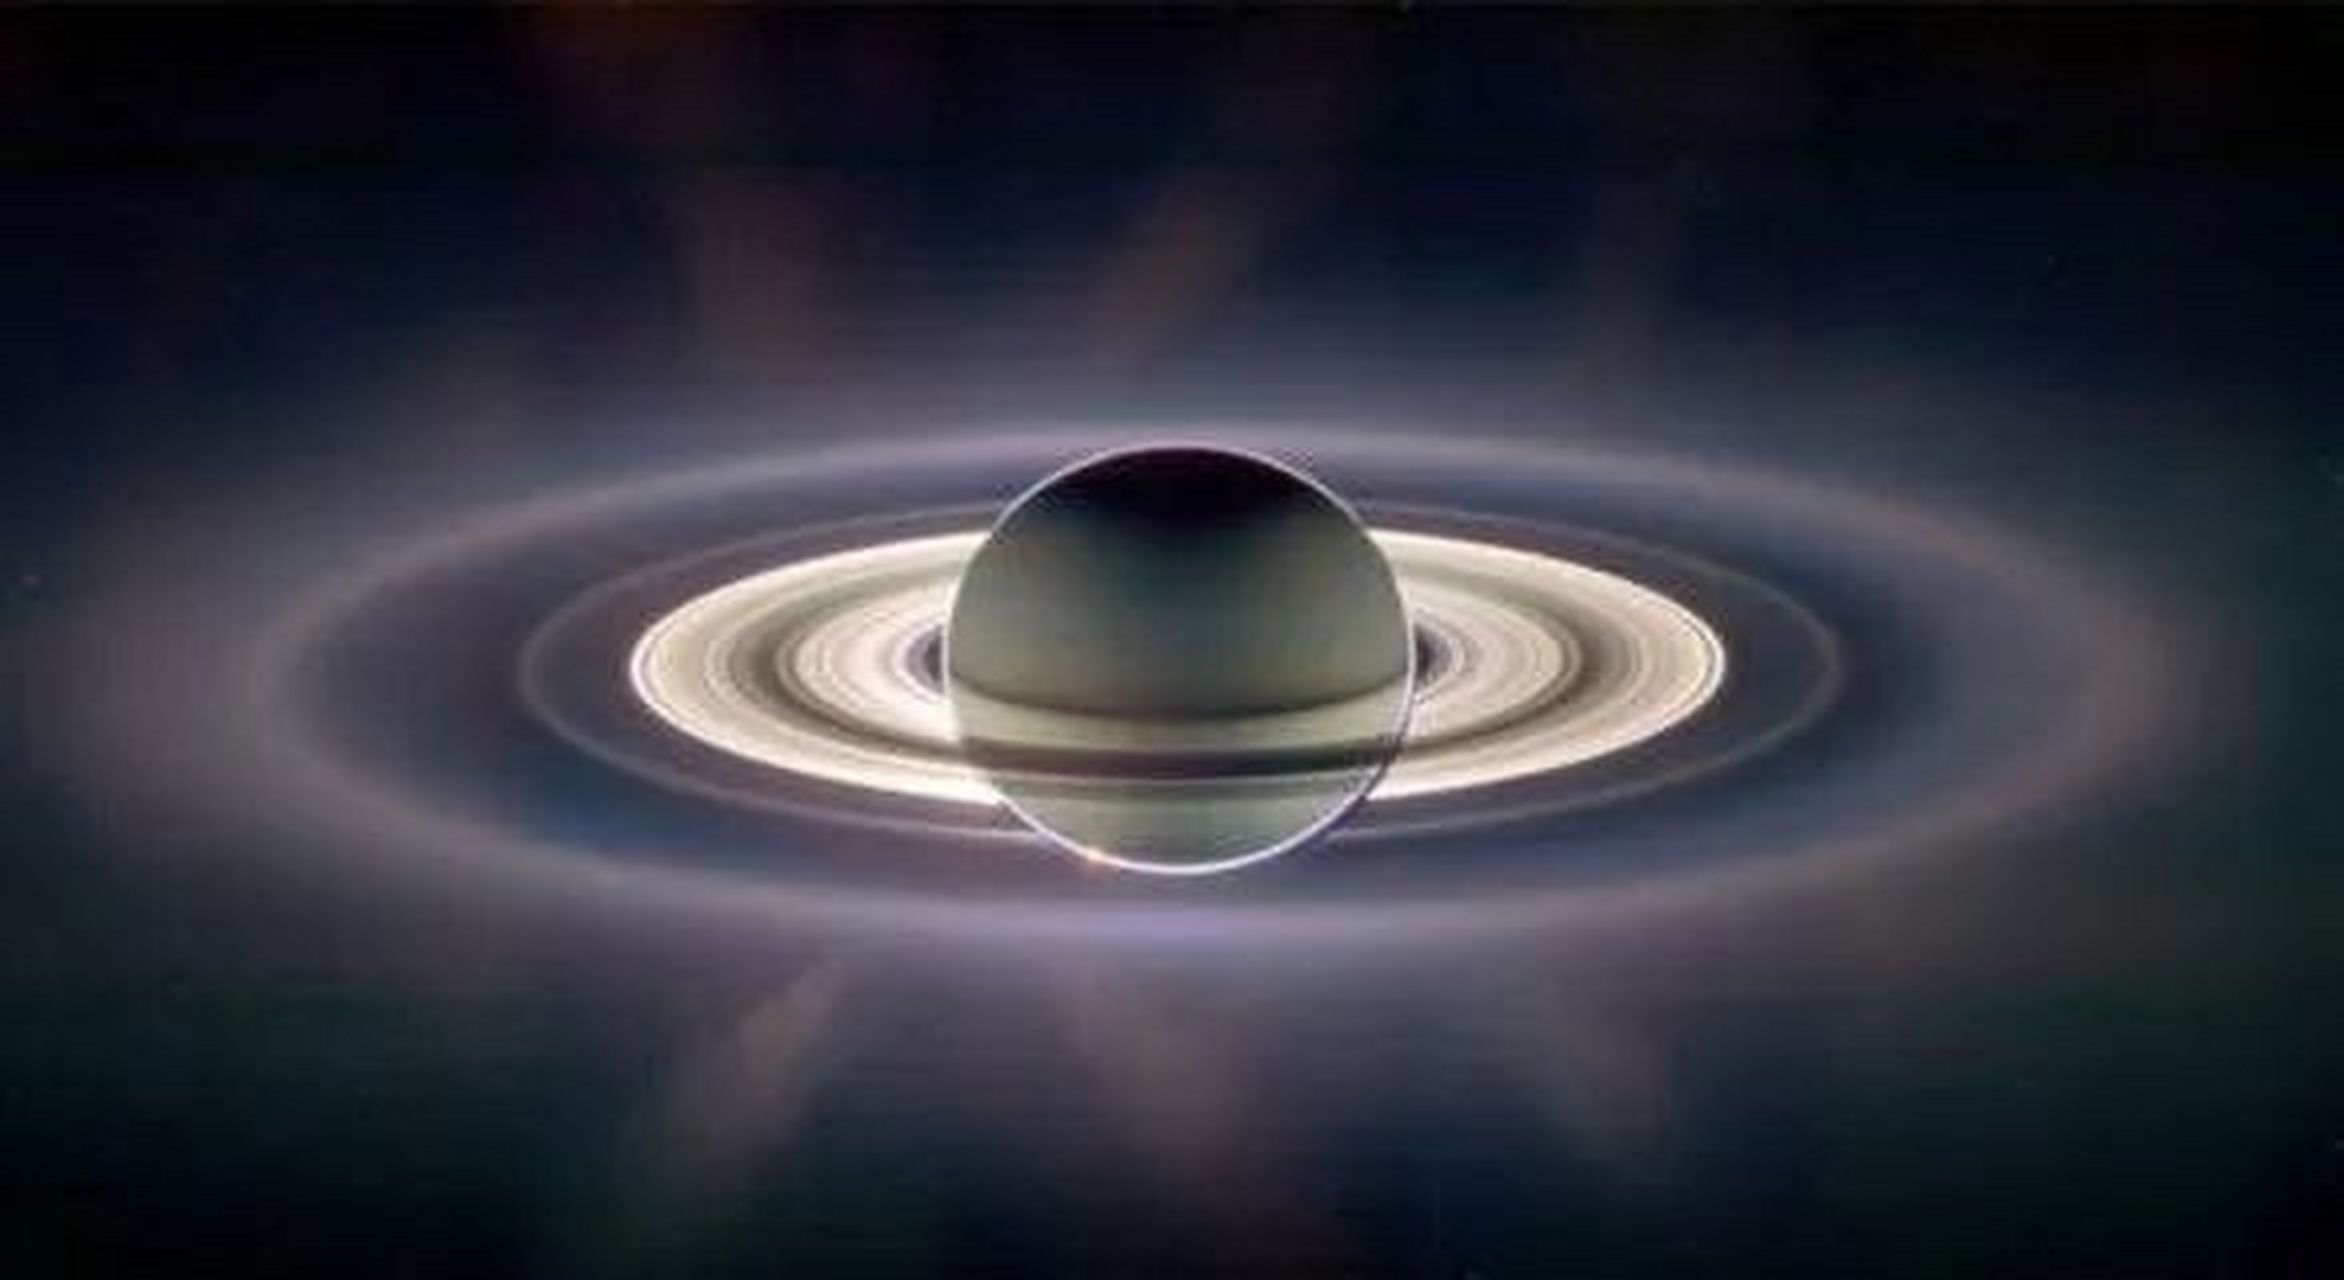 a,一个美丽的土星行星环,由冰微粒和较少数的岩石残骸以及尘土组成